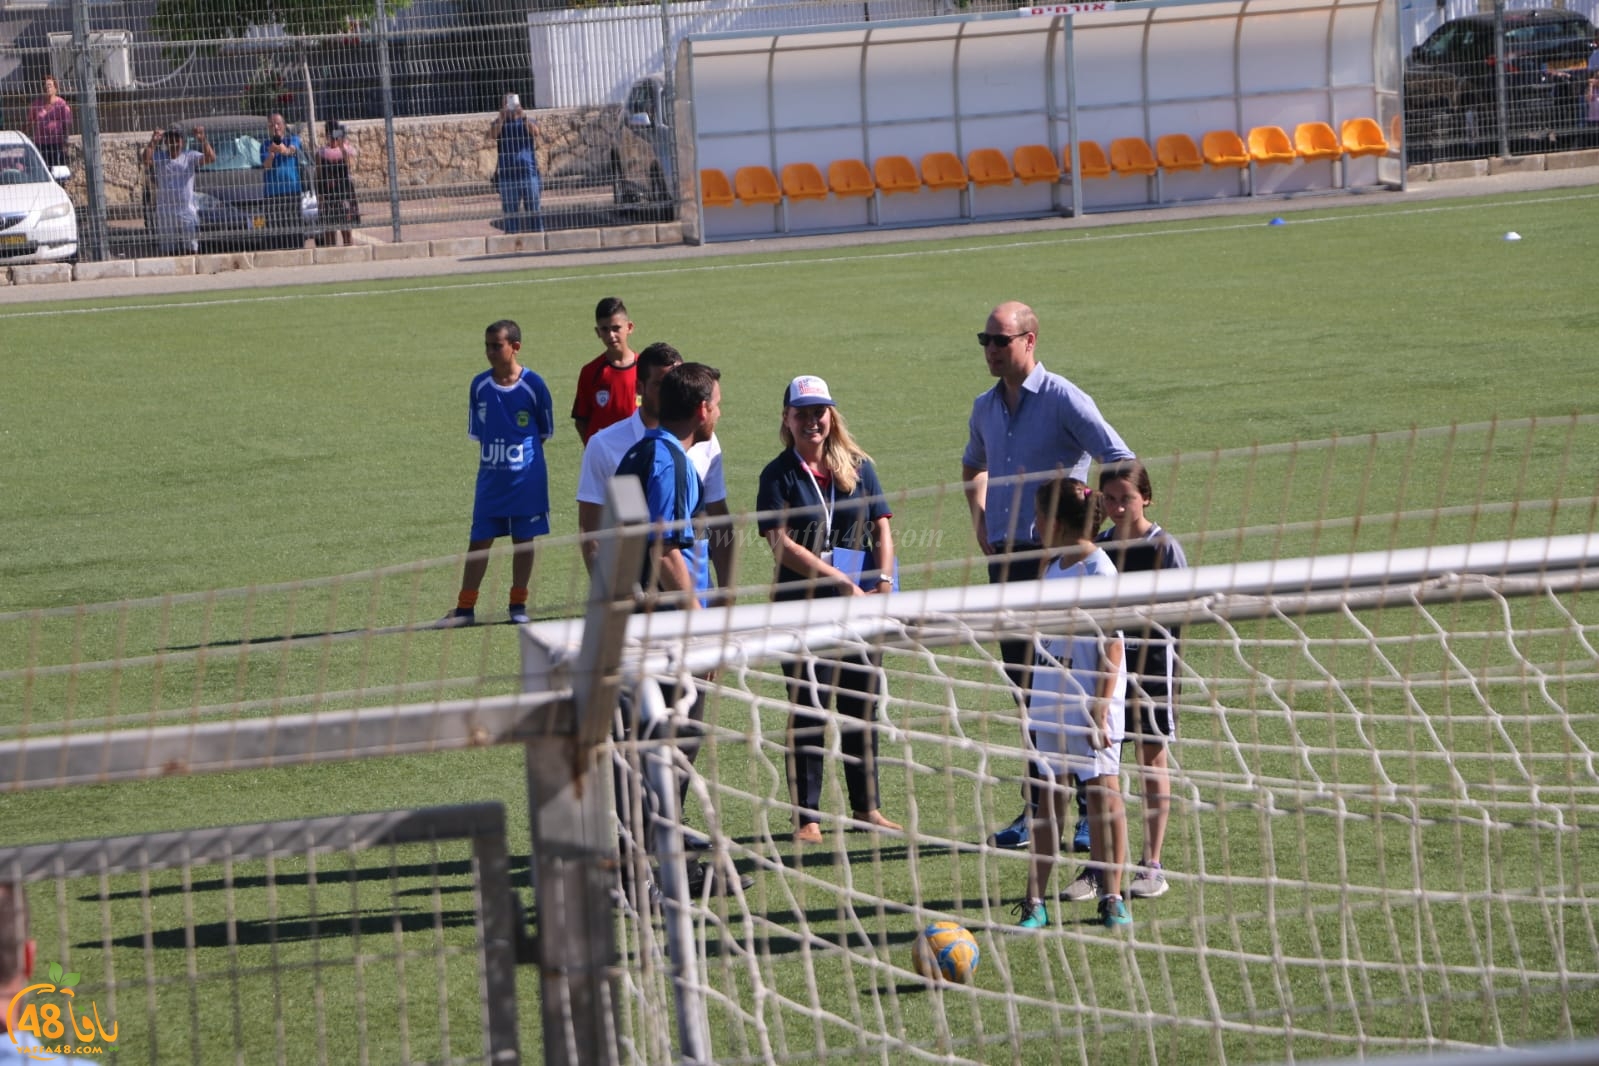  بالصور: الأمير ويليام يزور مدينة يافا ويلعب كرة القدم برفقة الأطفال 